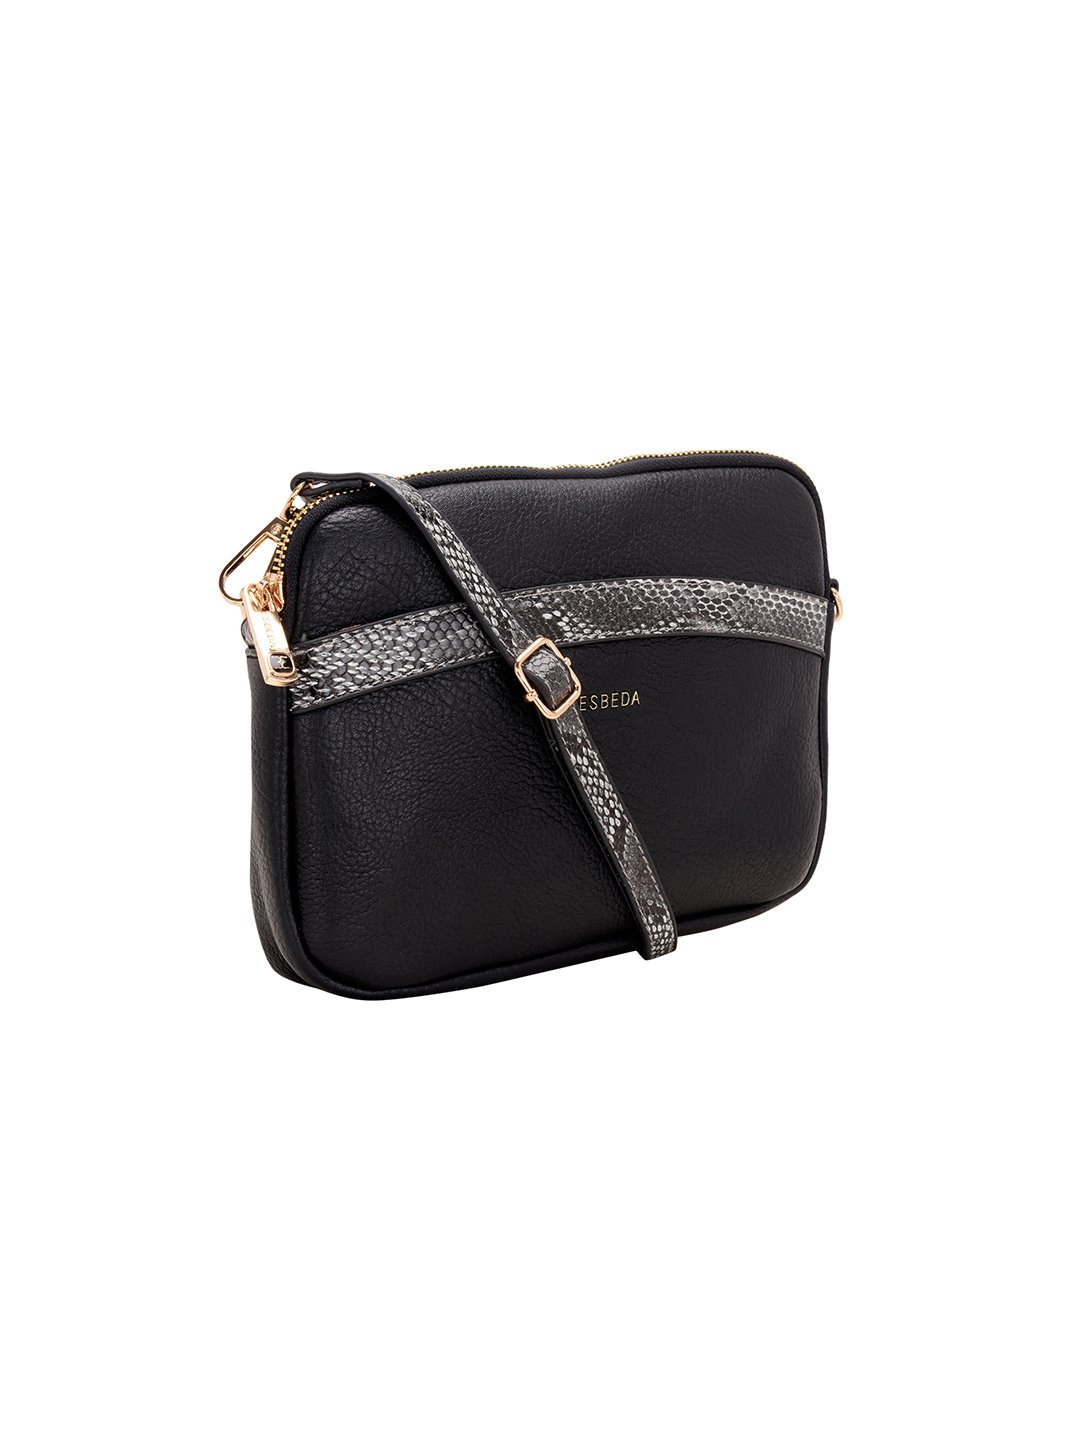 ESBEDA Black Color Best Mid range Sling Bag For Women - ESBEDA